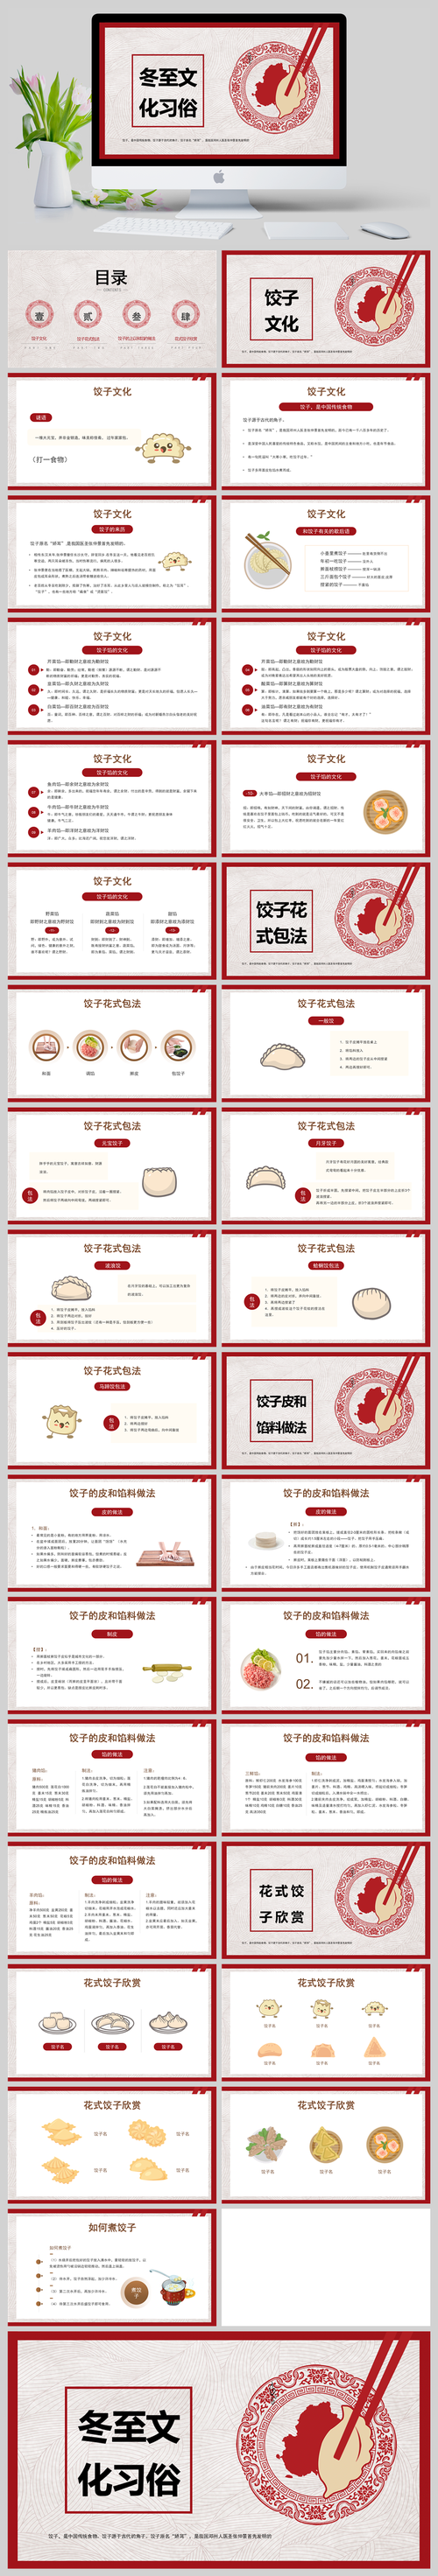 饺子是什么意思中文